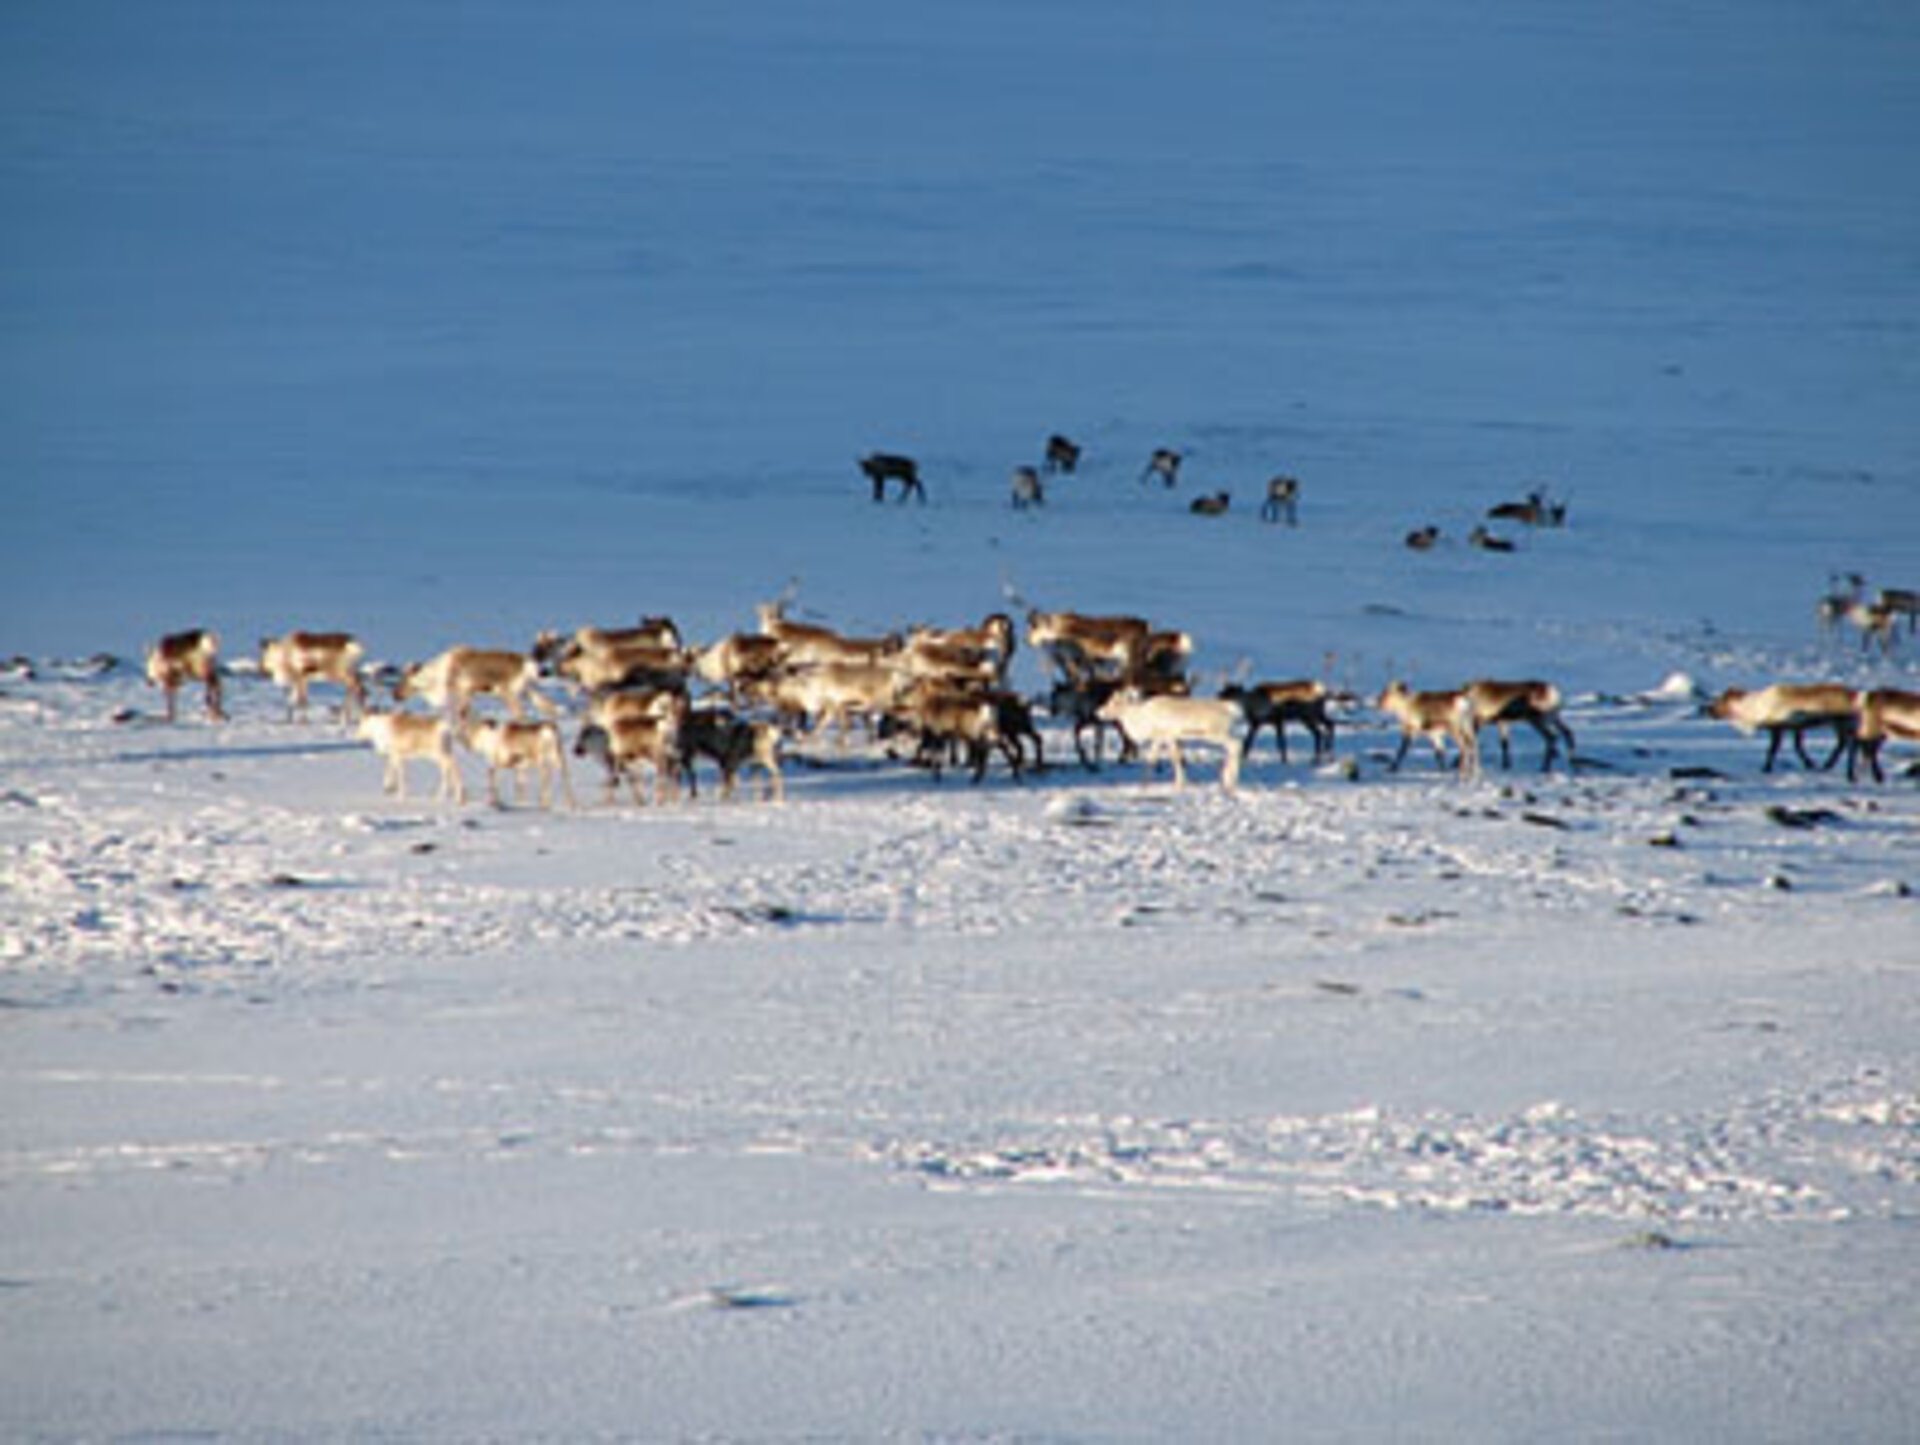 A reindeer herd in Sweden